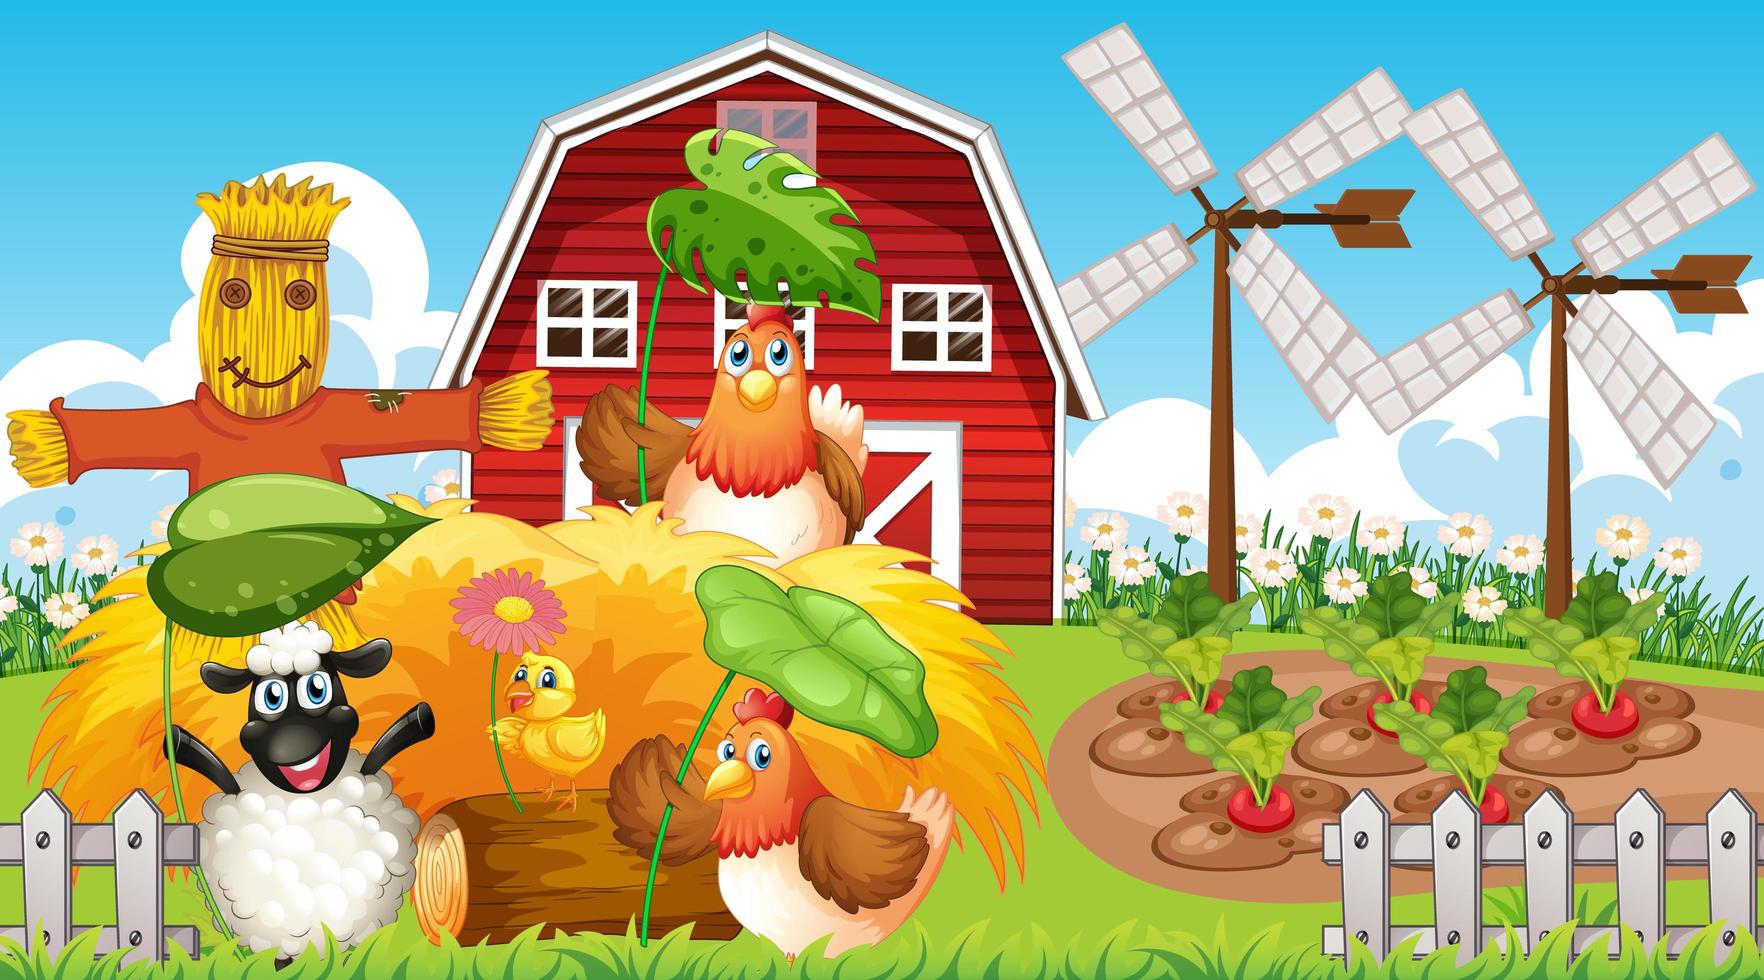 Farm theme background with farm animals vector